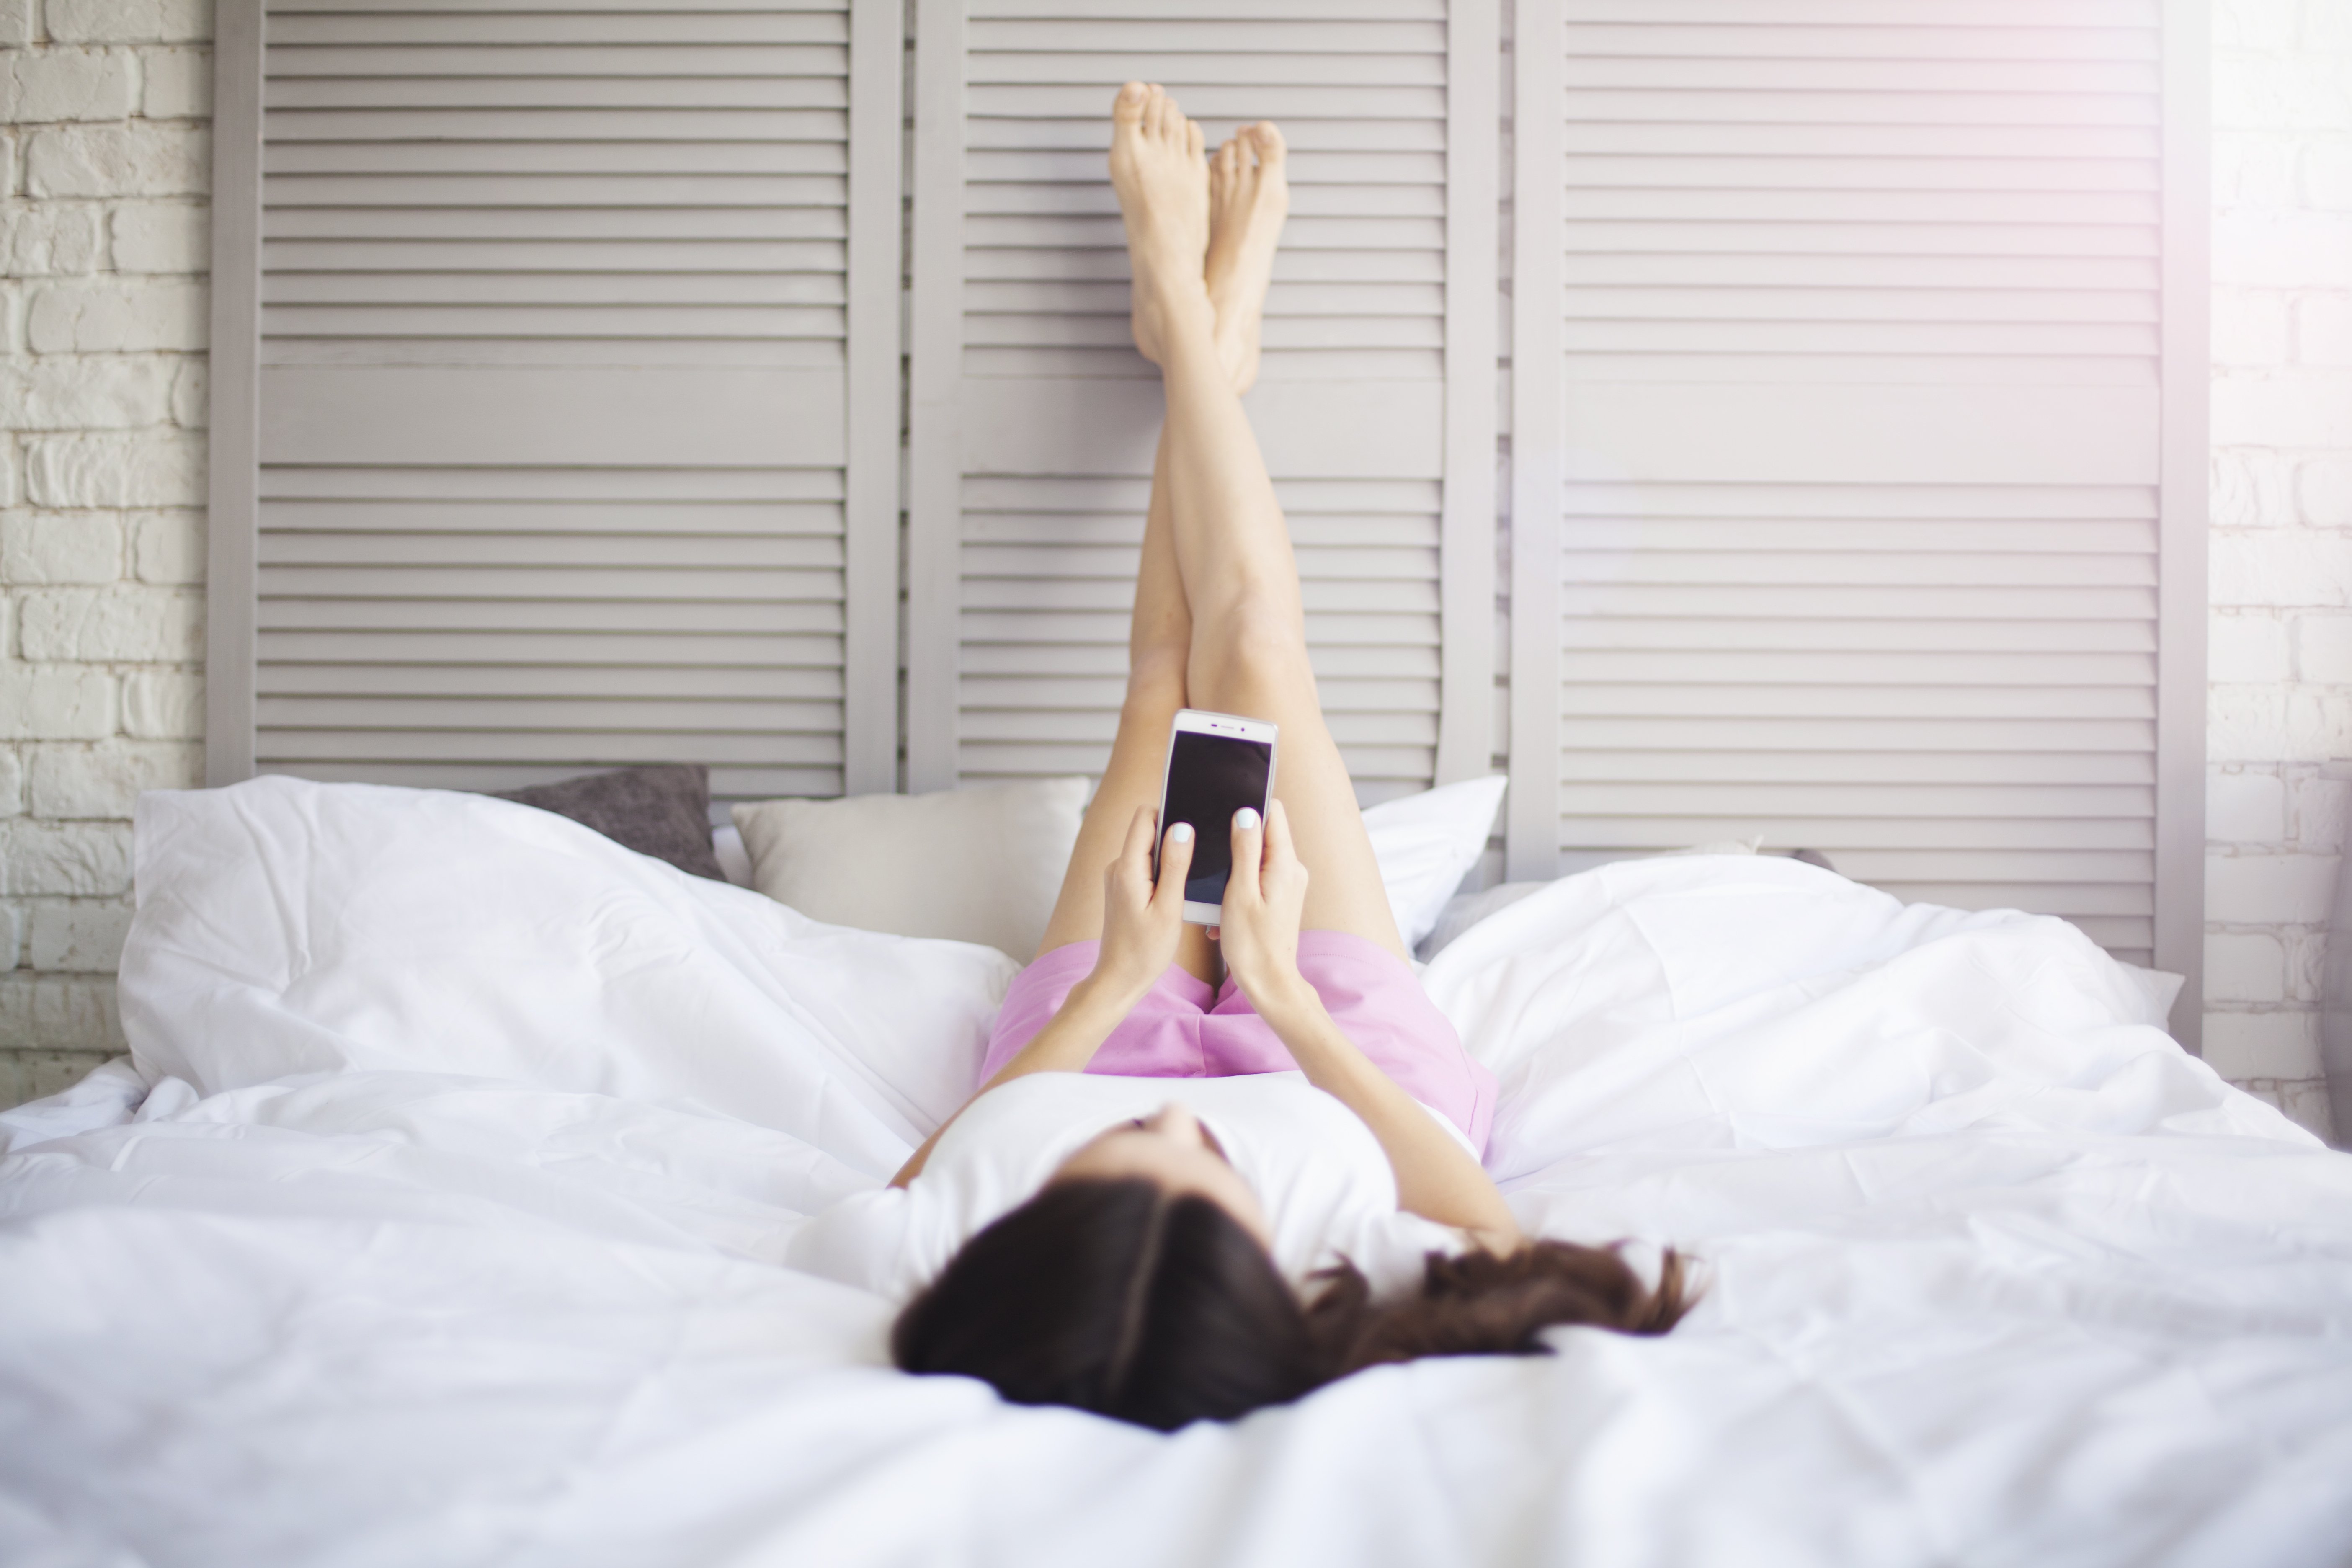 Frau liegt auf Bett mit Beinen hoch | Quelle: Shutterstock